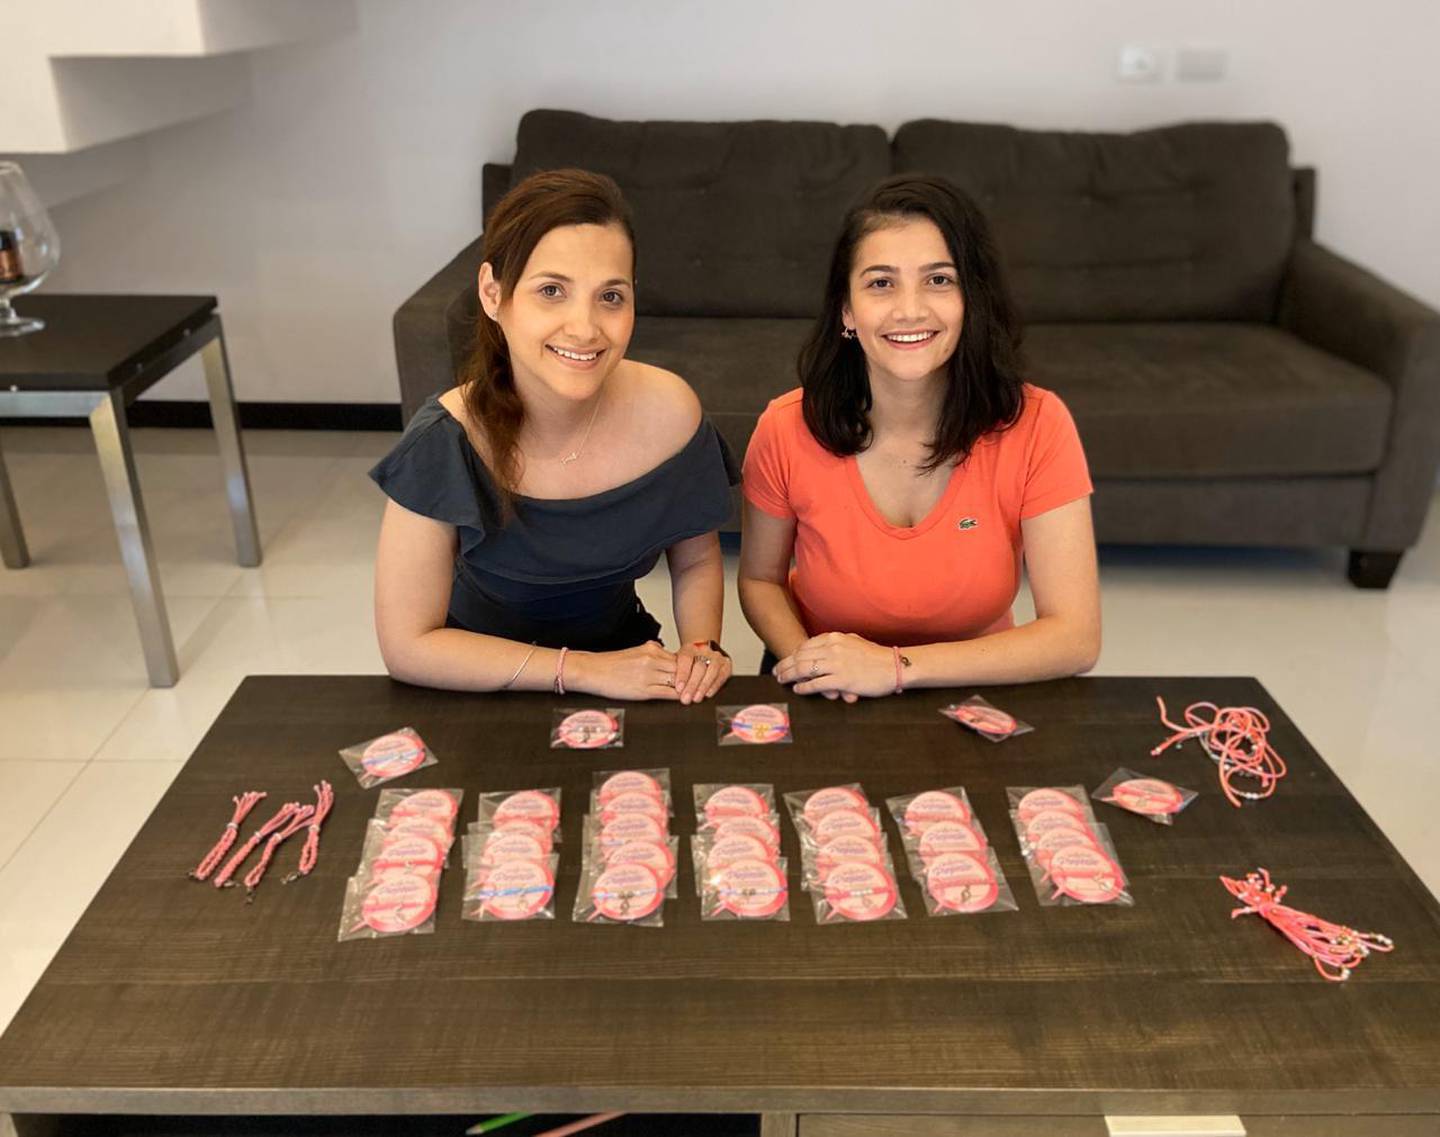 Itzel Segura Segura, odontóloga y Kimberly Chacón Rodríguez, instructora física, crearon “Pulseras con propósito” para ayudar a quienes luchan contra el cáncer de mama. En la foto, Itzel de gris y Kimberly de anaranjado.